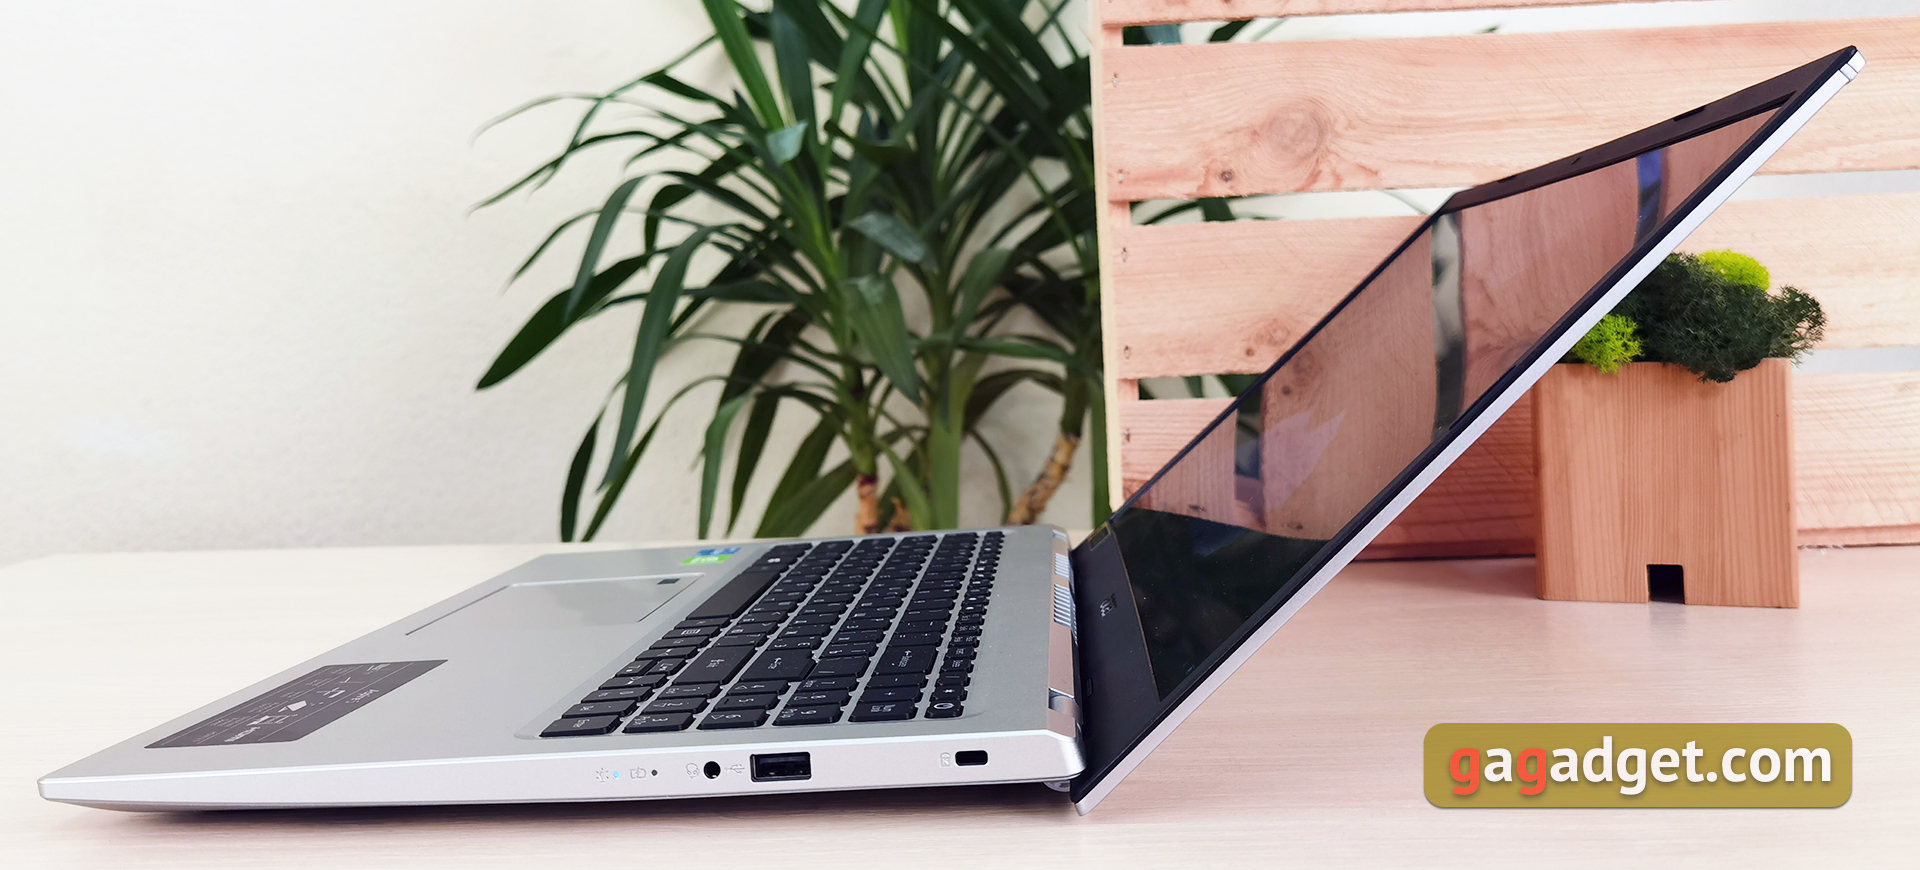 Обзор Acer Aspire 5: самый доступный ноутбук с Intel Tiger Lake, IPS-дисплеем и дискретной графикой-16